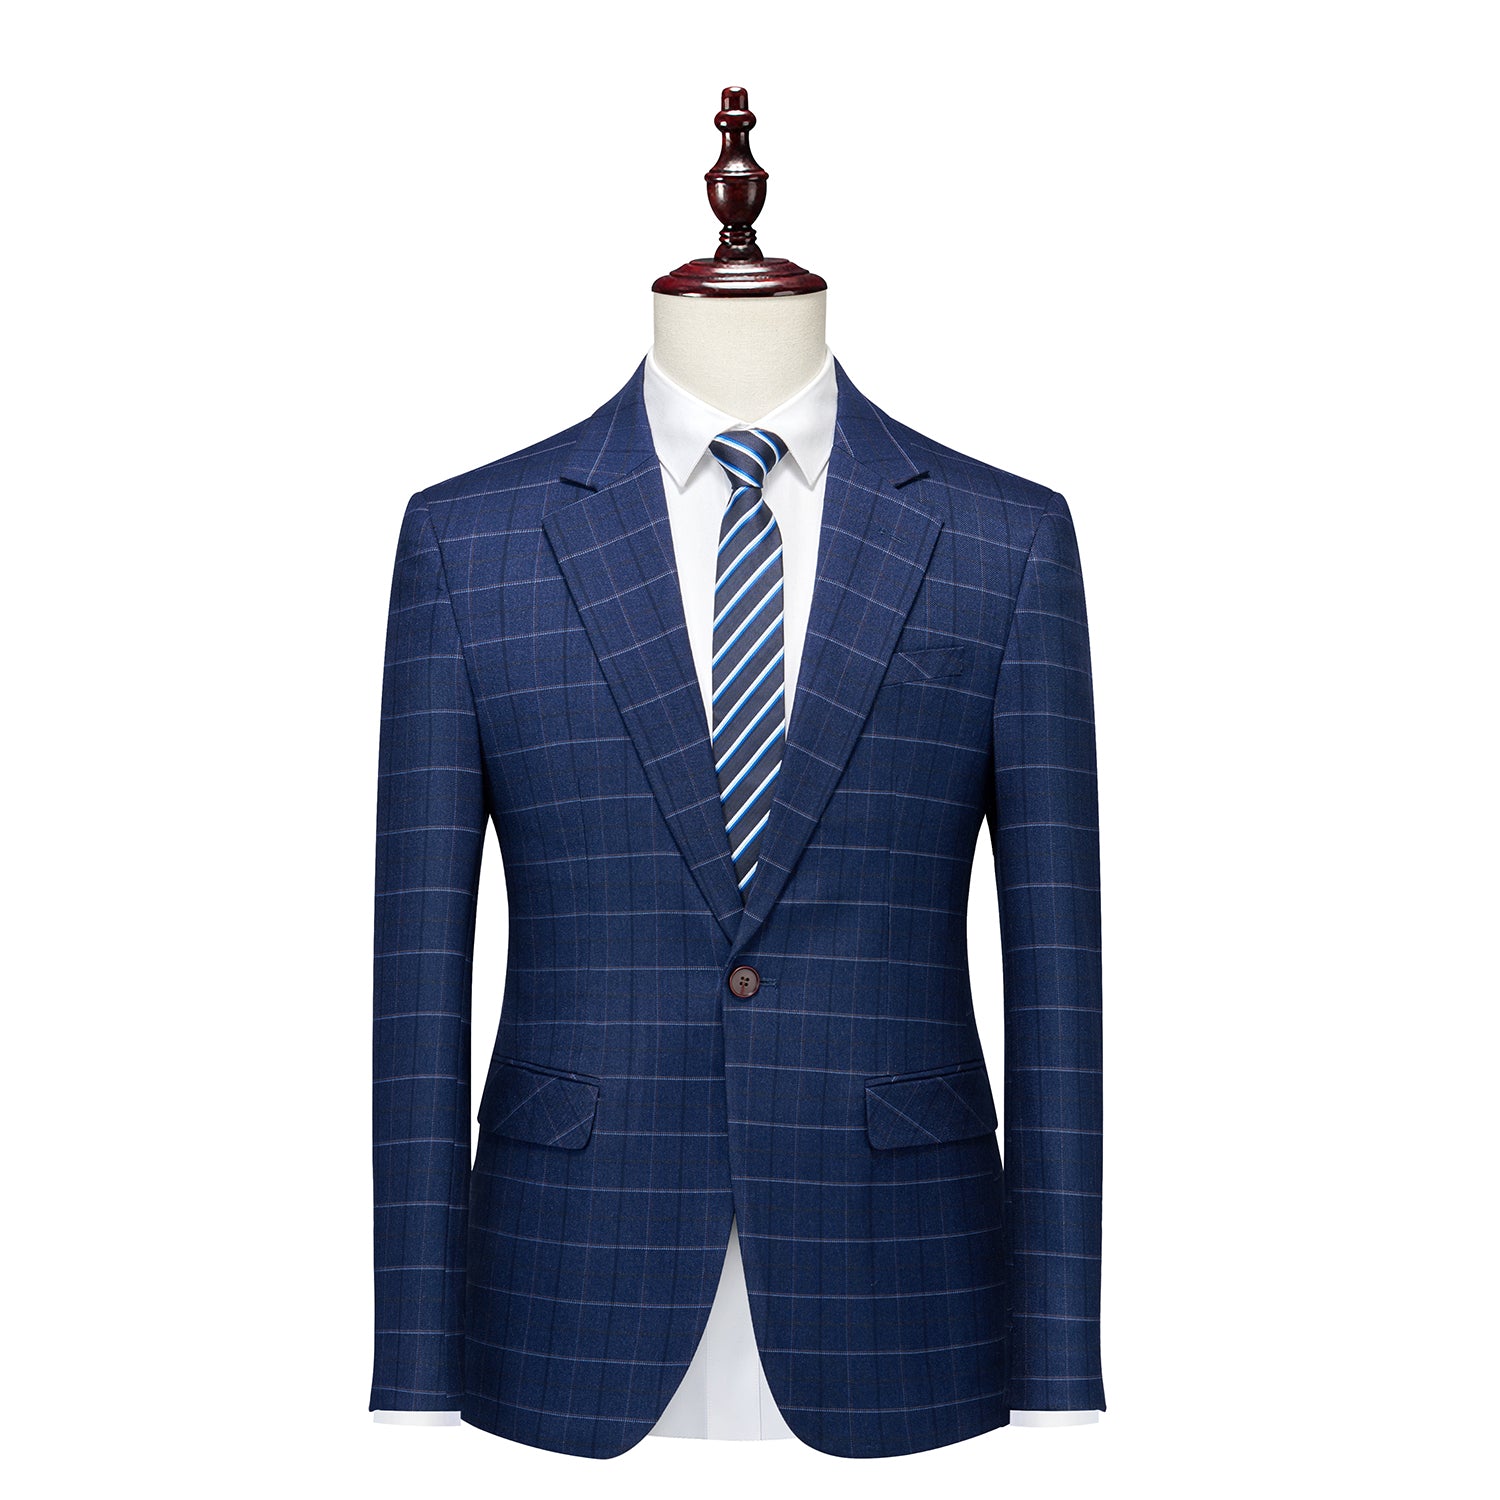 Men's Plaid Blazer Casual Dark Blue Checkered Suit jacket